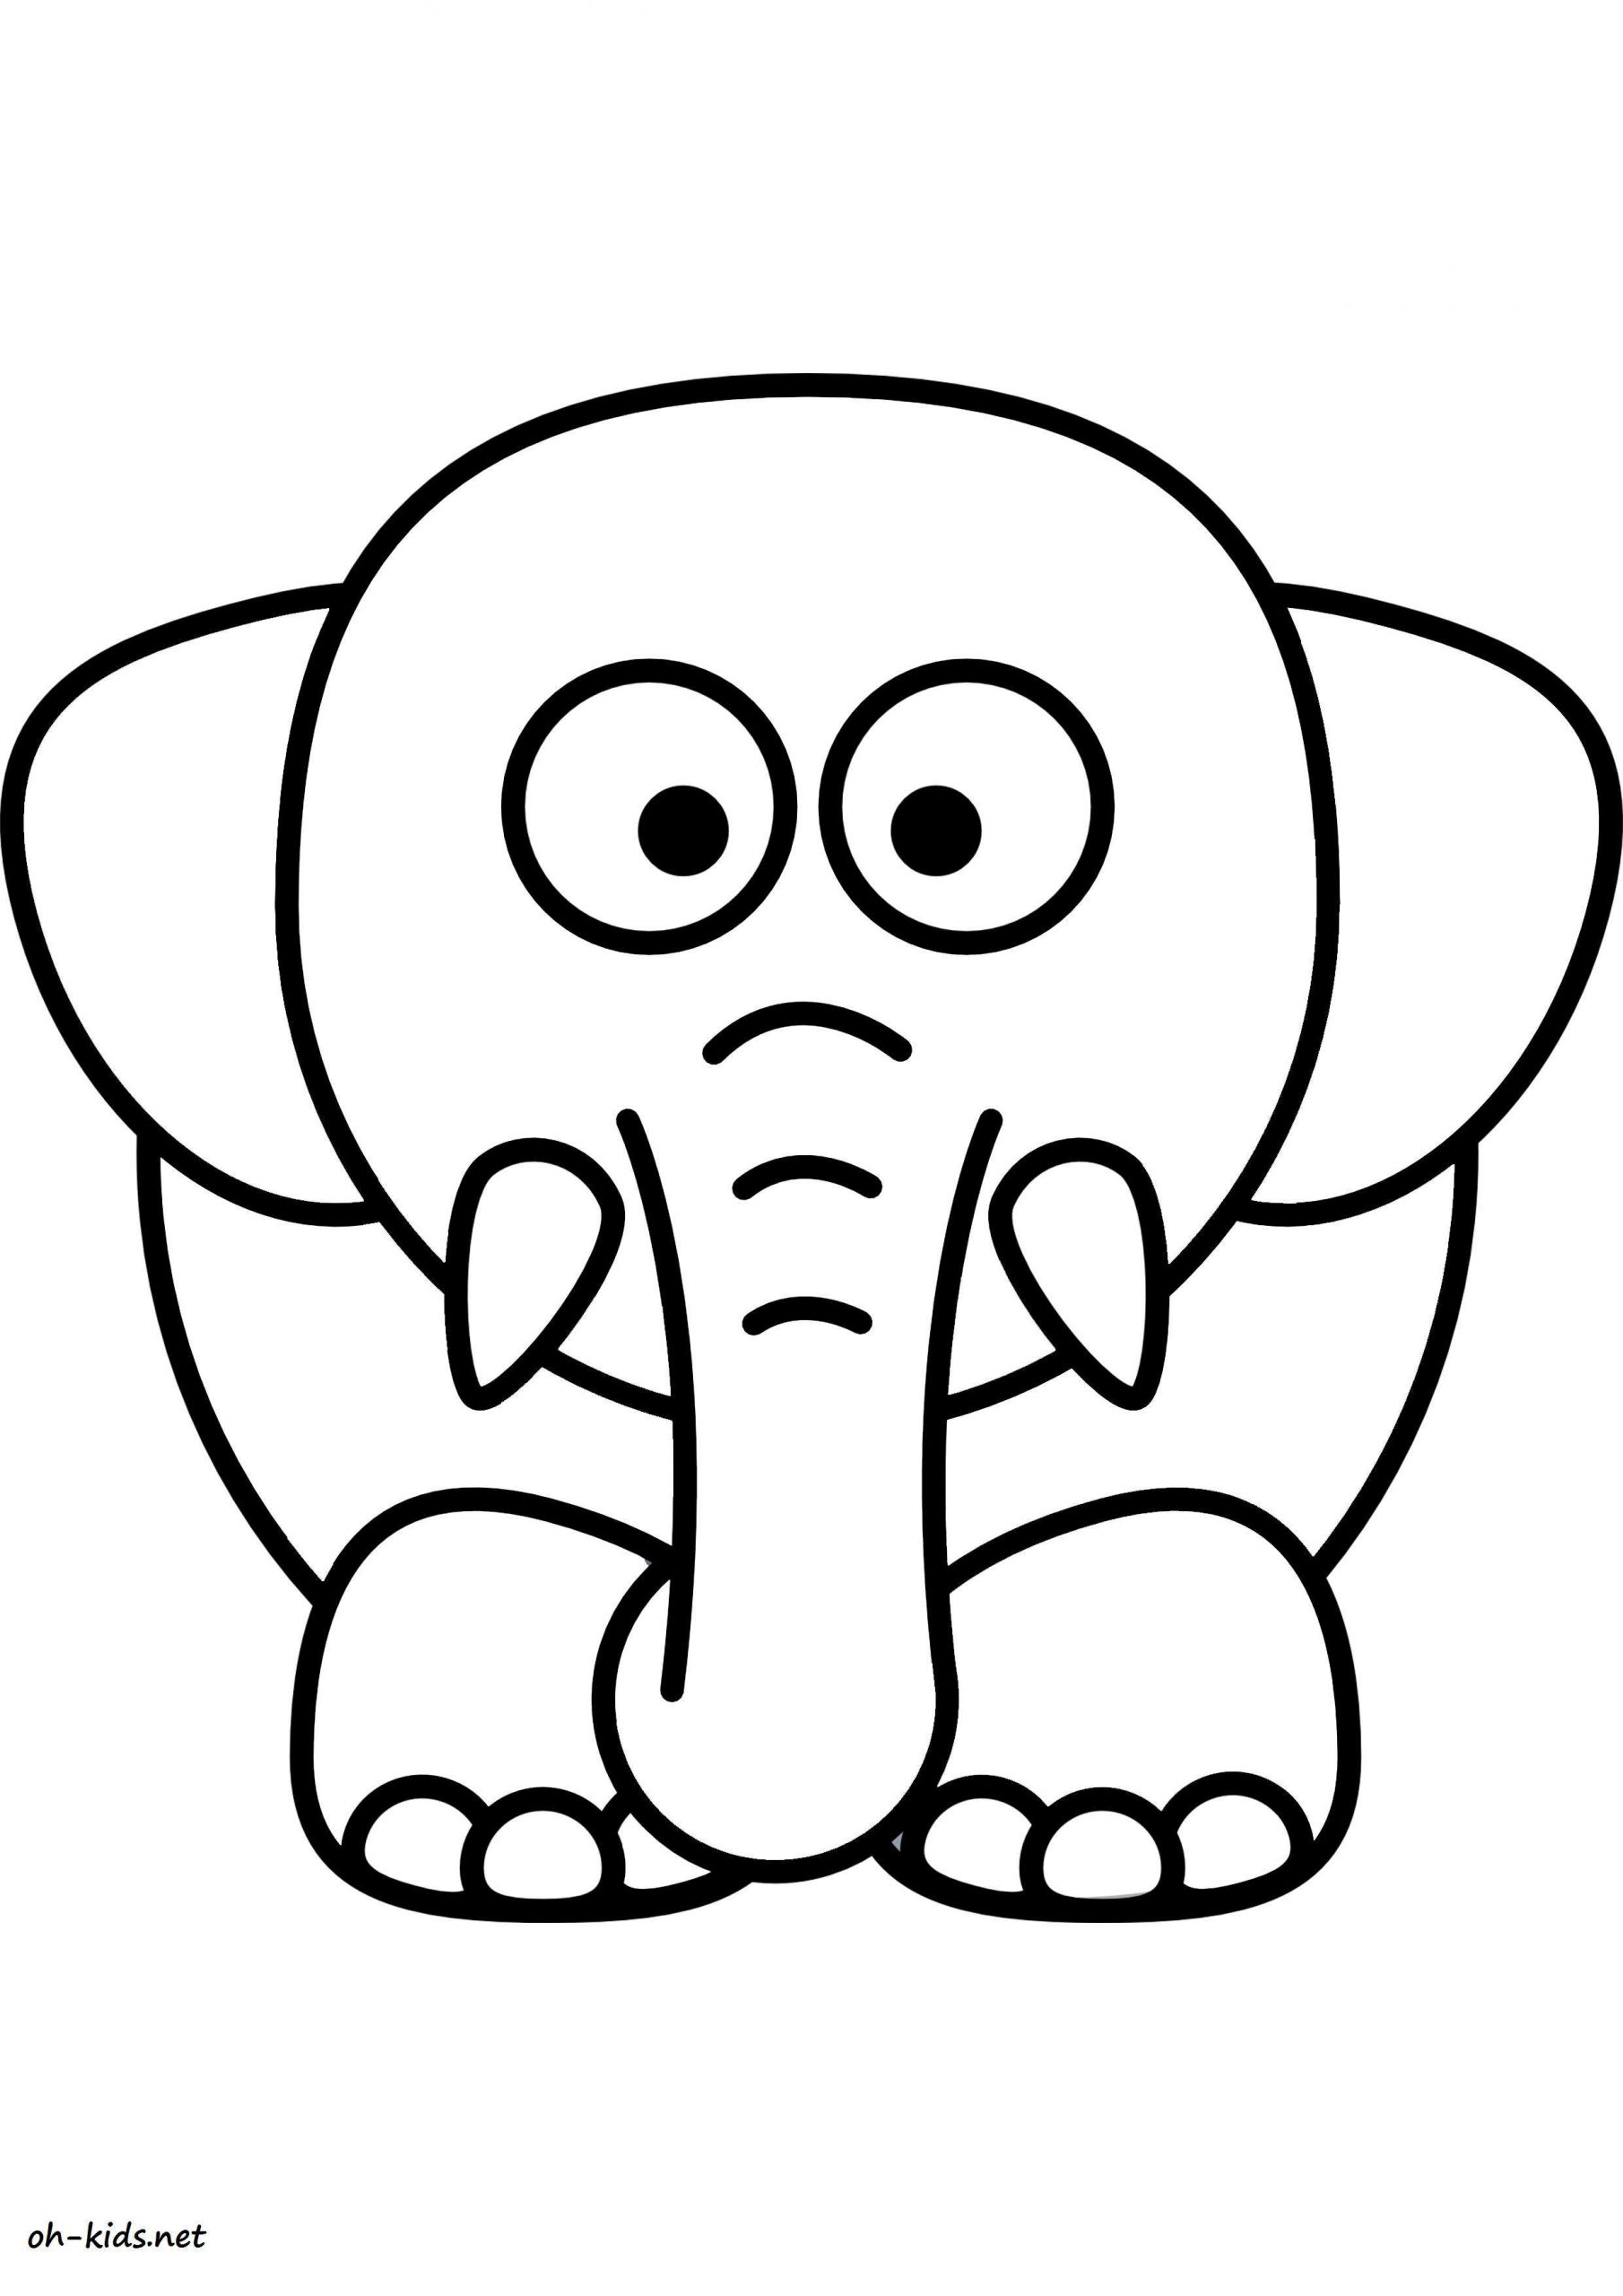 Coloriage Éléphant - Oh Kids Fr avec Dessin D Éléphant À Colorier